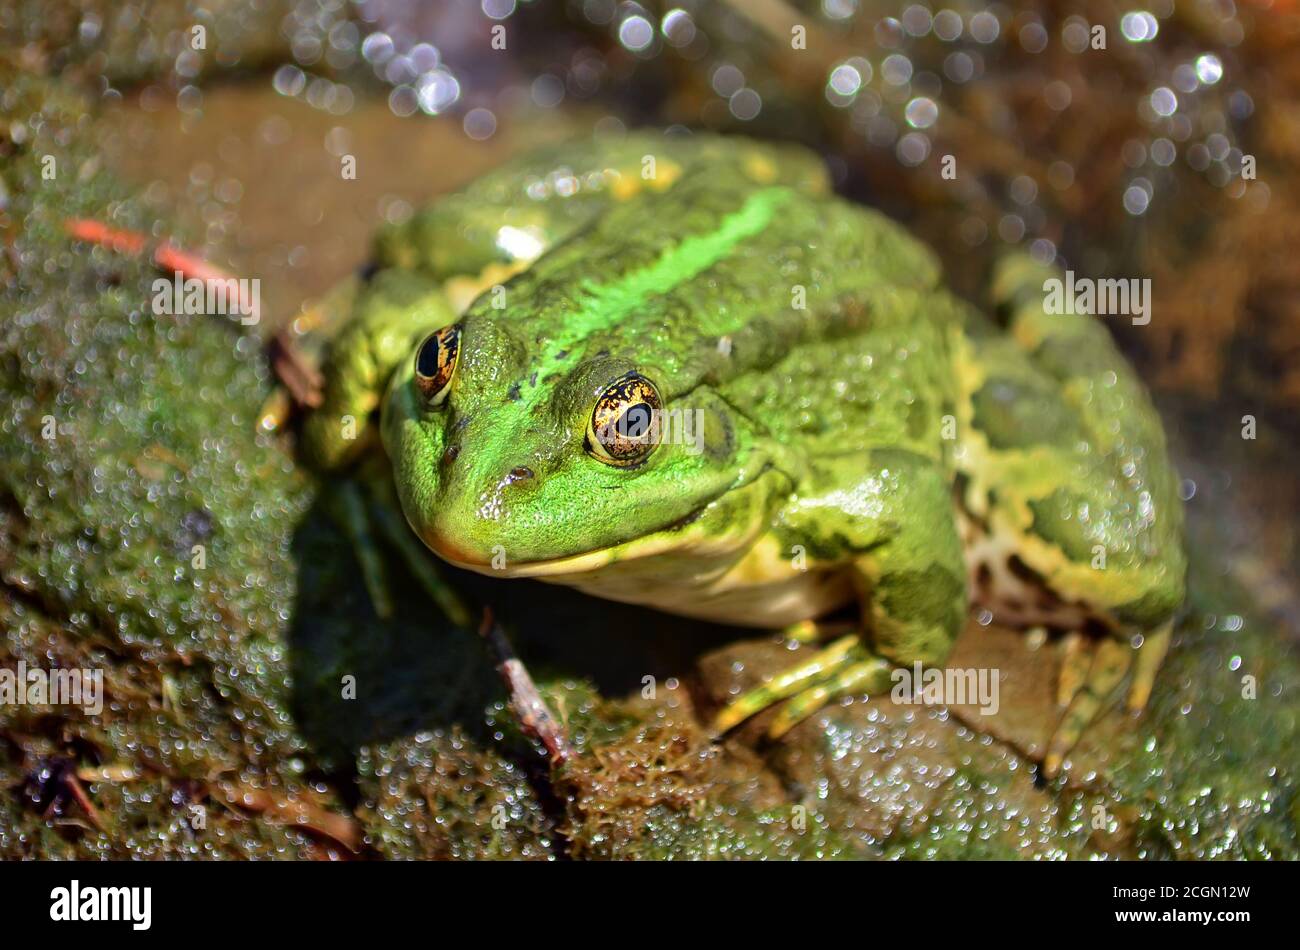 Grüner Frosch sitzt am Ufer des Teiches in einem natürlichen Lebensraum. Fauna der Ukraine. Geringe Schärfentiefe, Nahaufnahme. Stockfoto